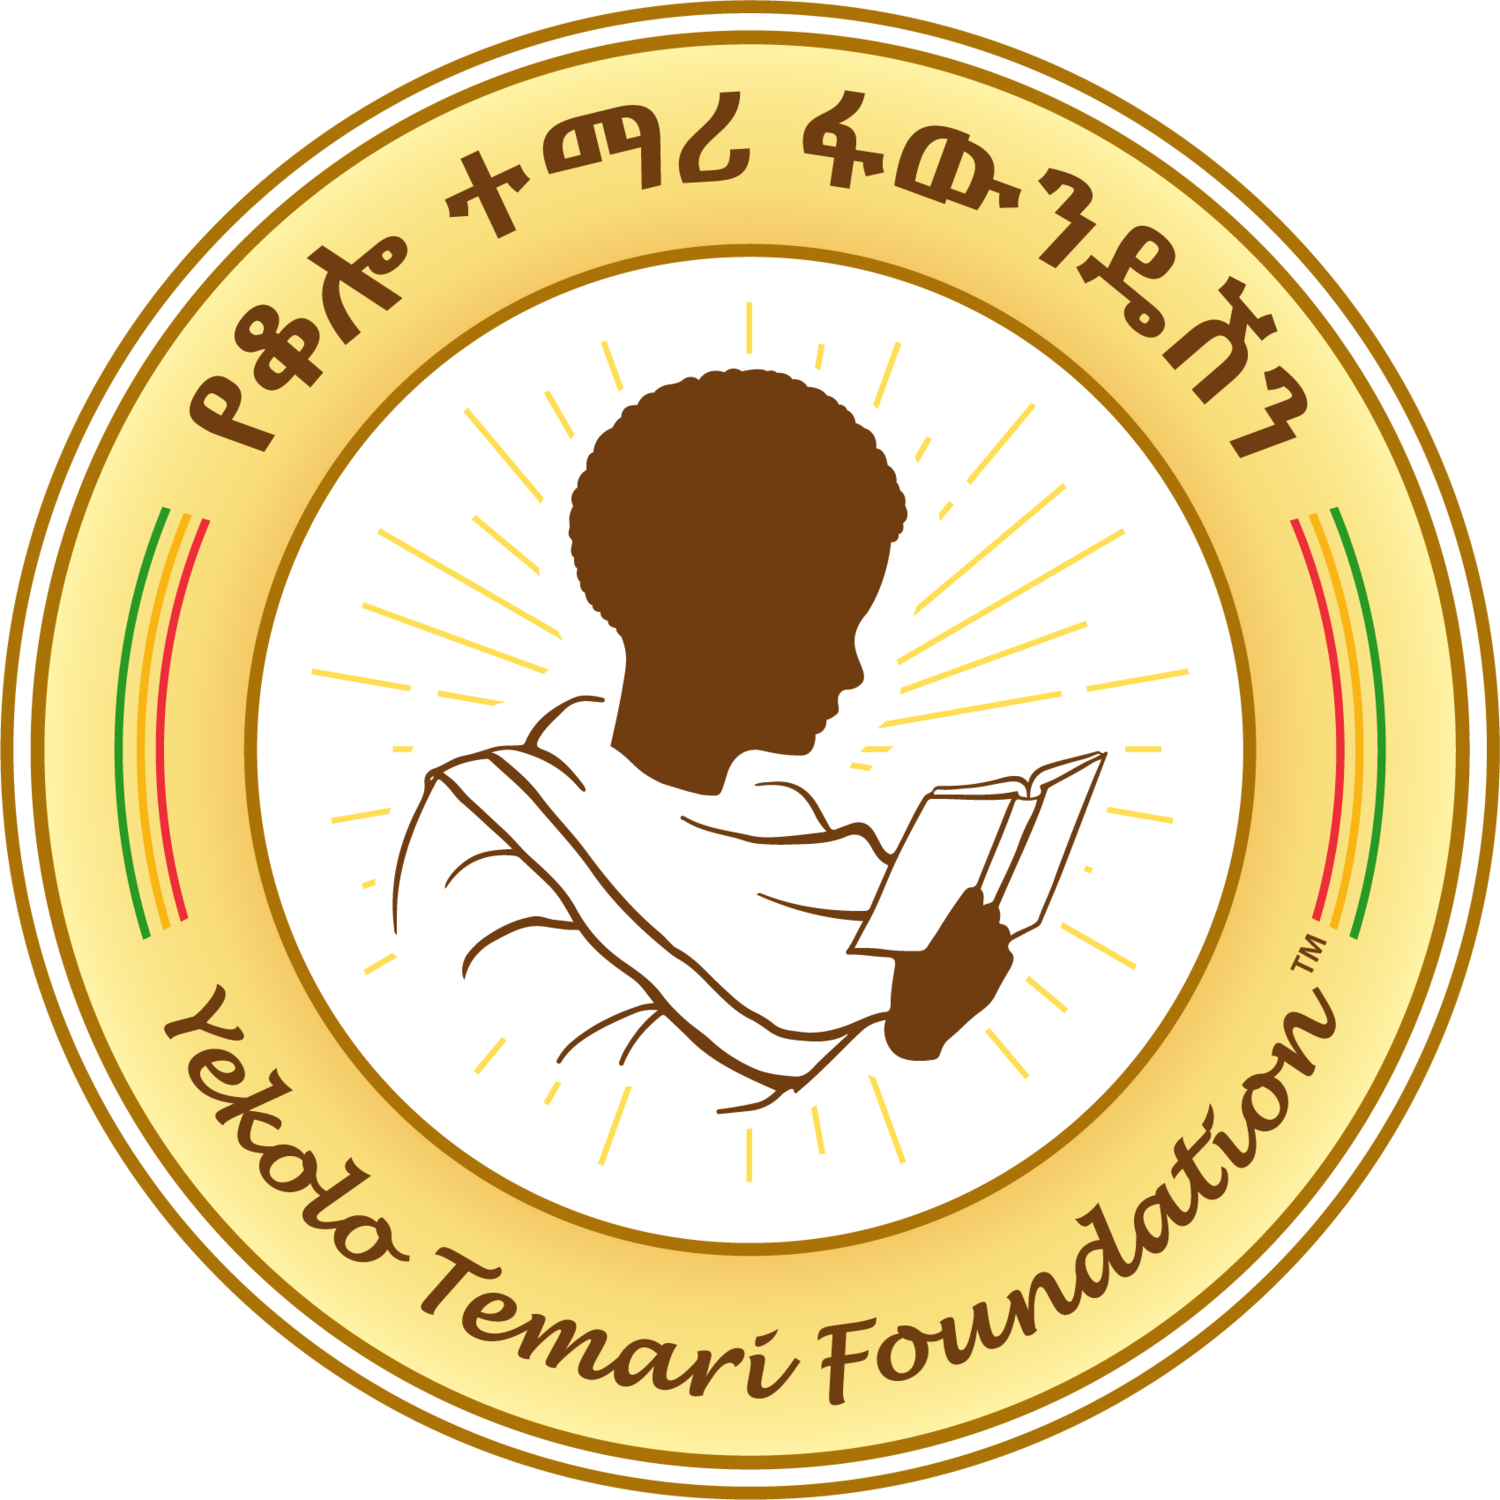 YeKolo Temari Foundation